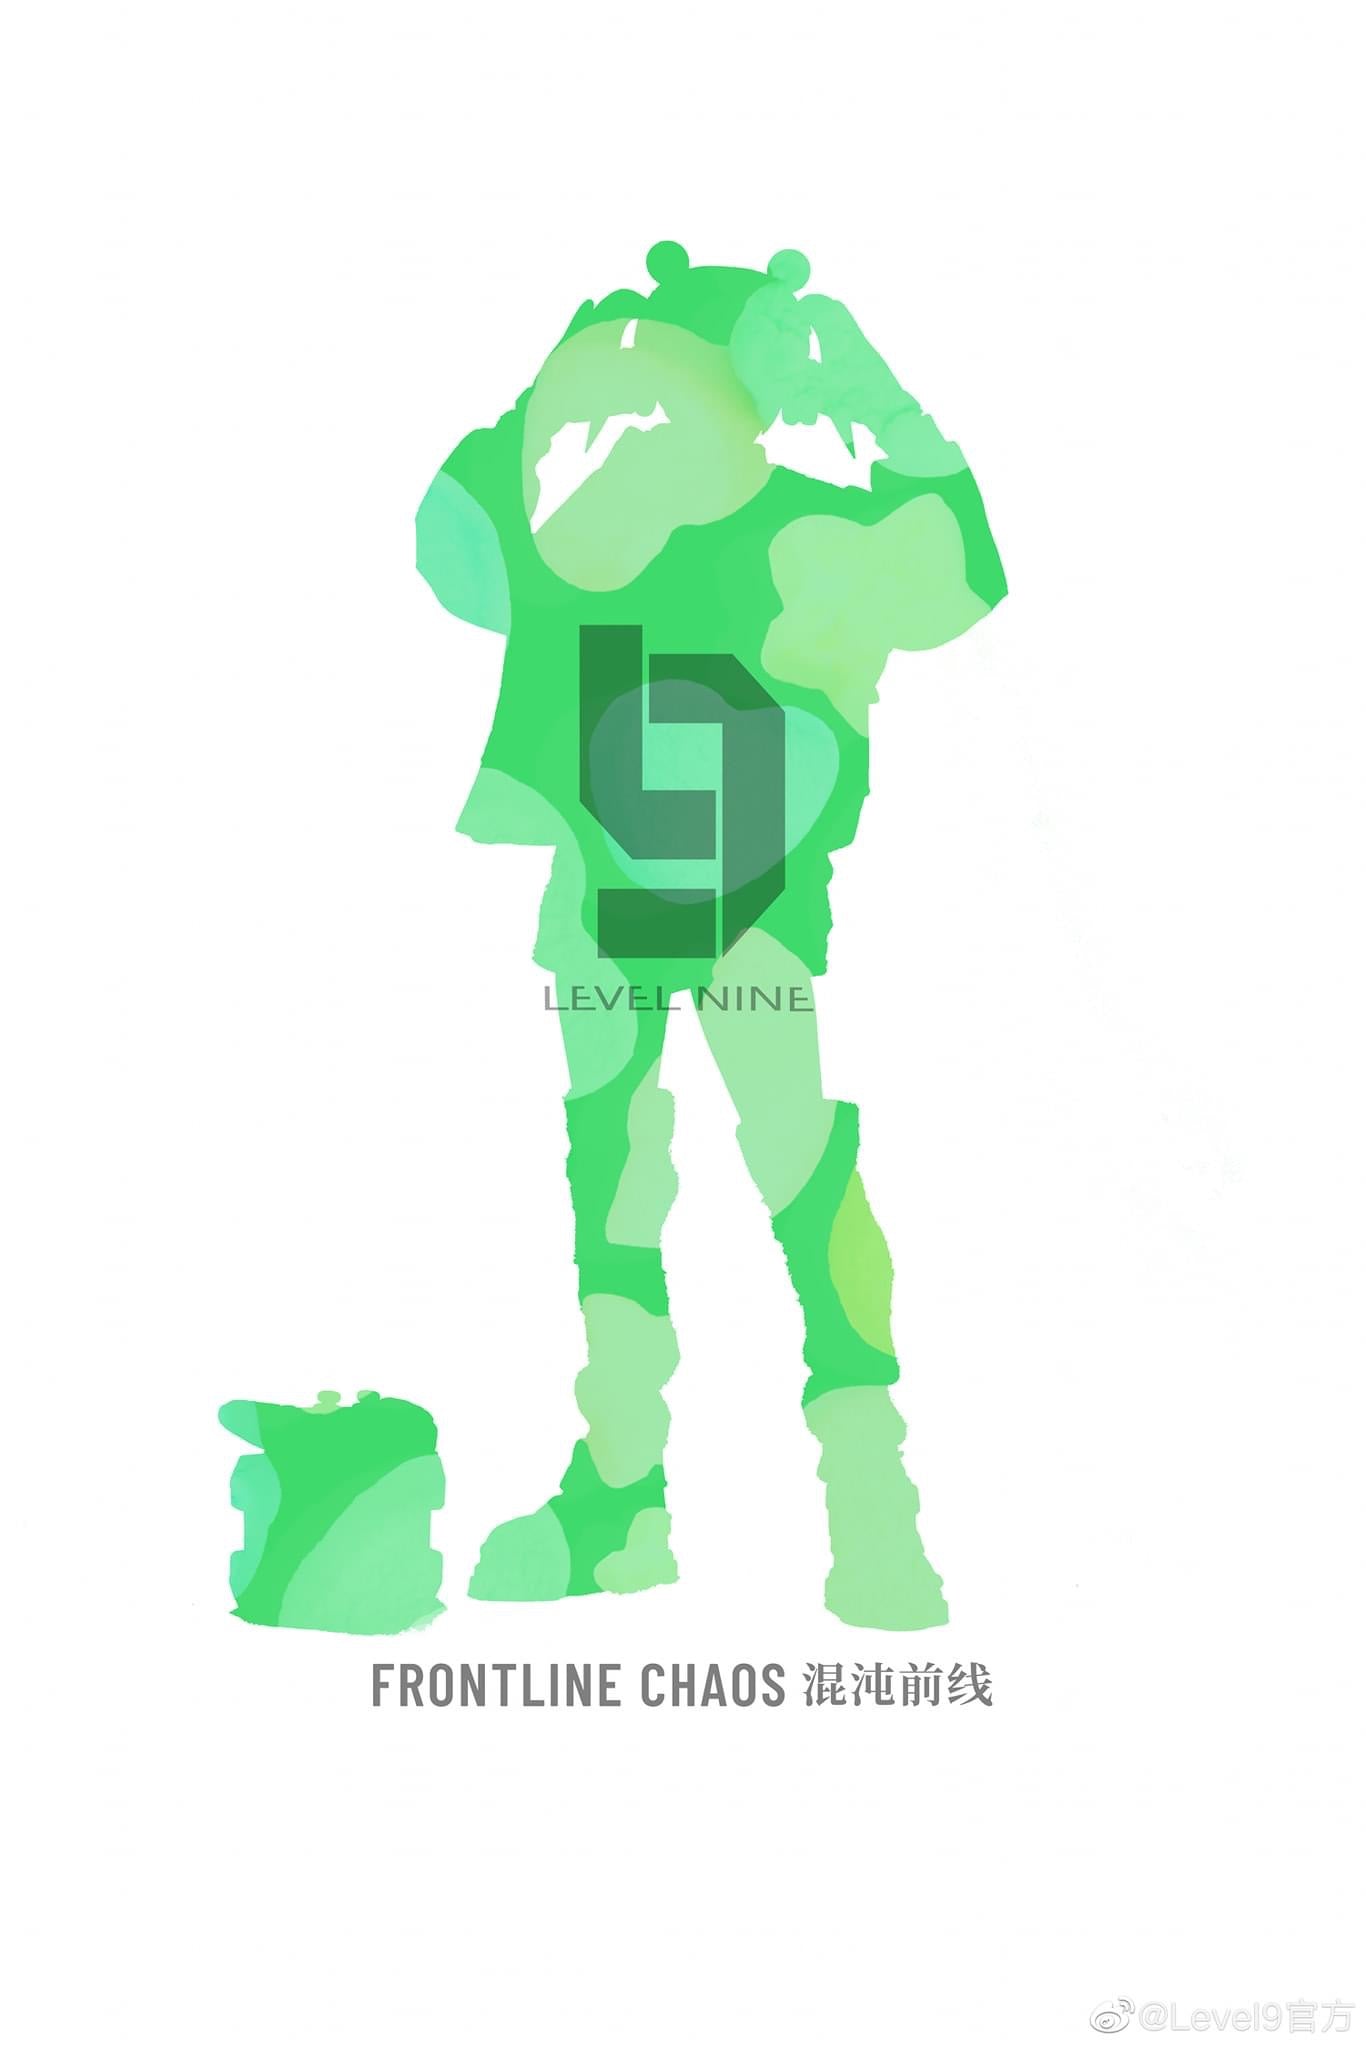 Pedido Figura Candyfrog Hacker - Frontline Chaos marca JOYTOY JT3358 escala pequeña 1/12